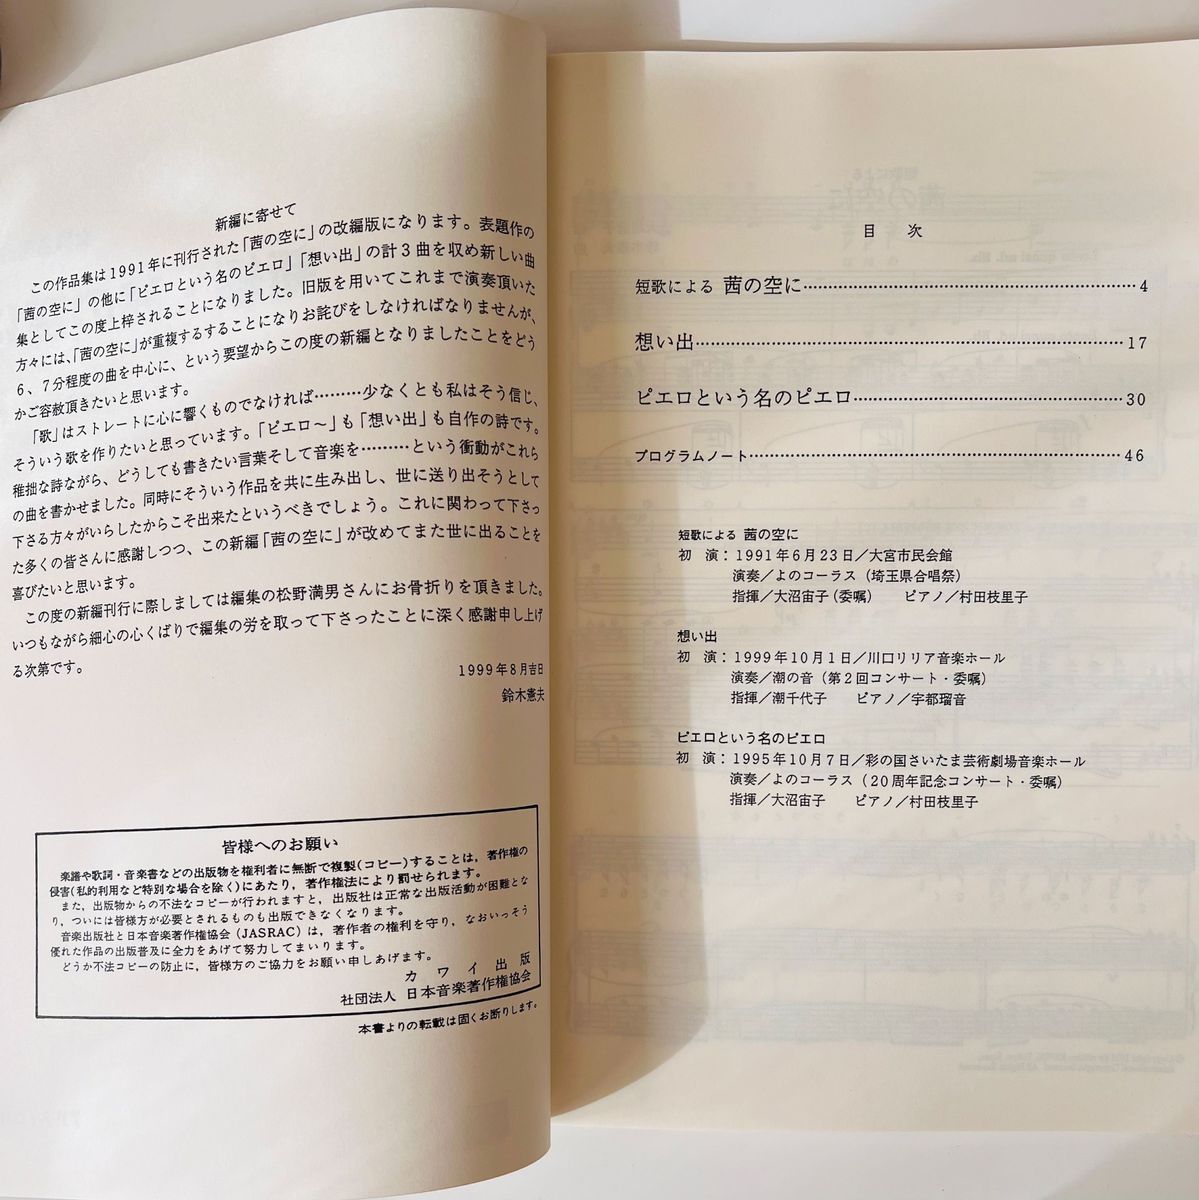 鈴木憲夫 女声合唱曲集「新編・茜の空に」楽譜